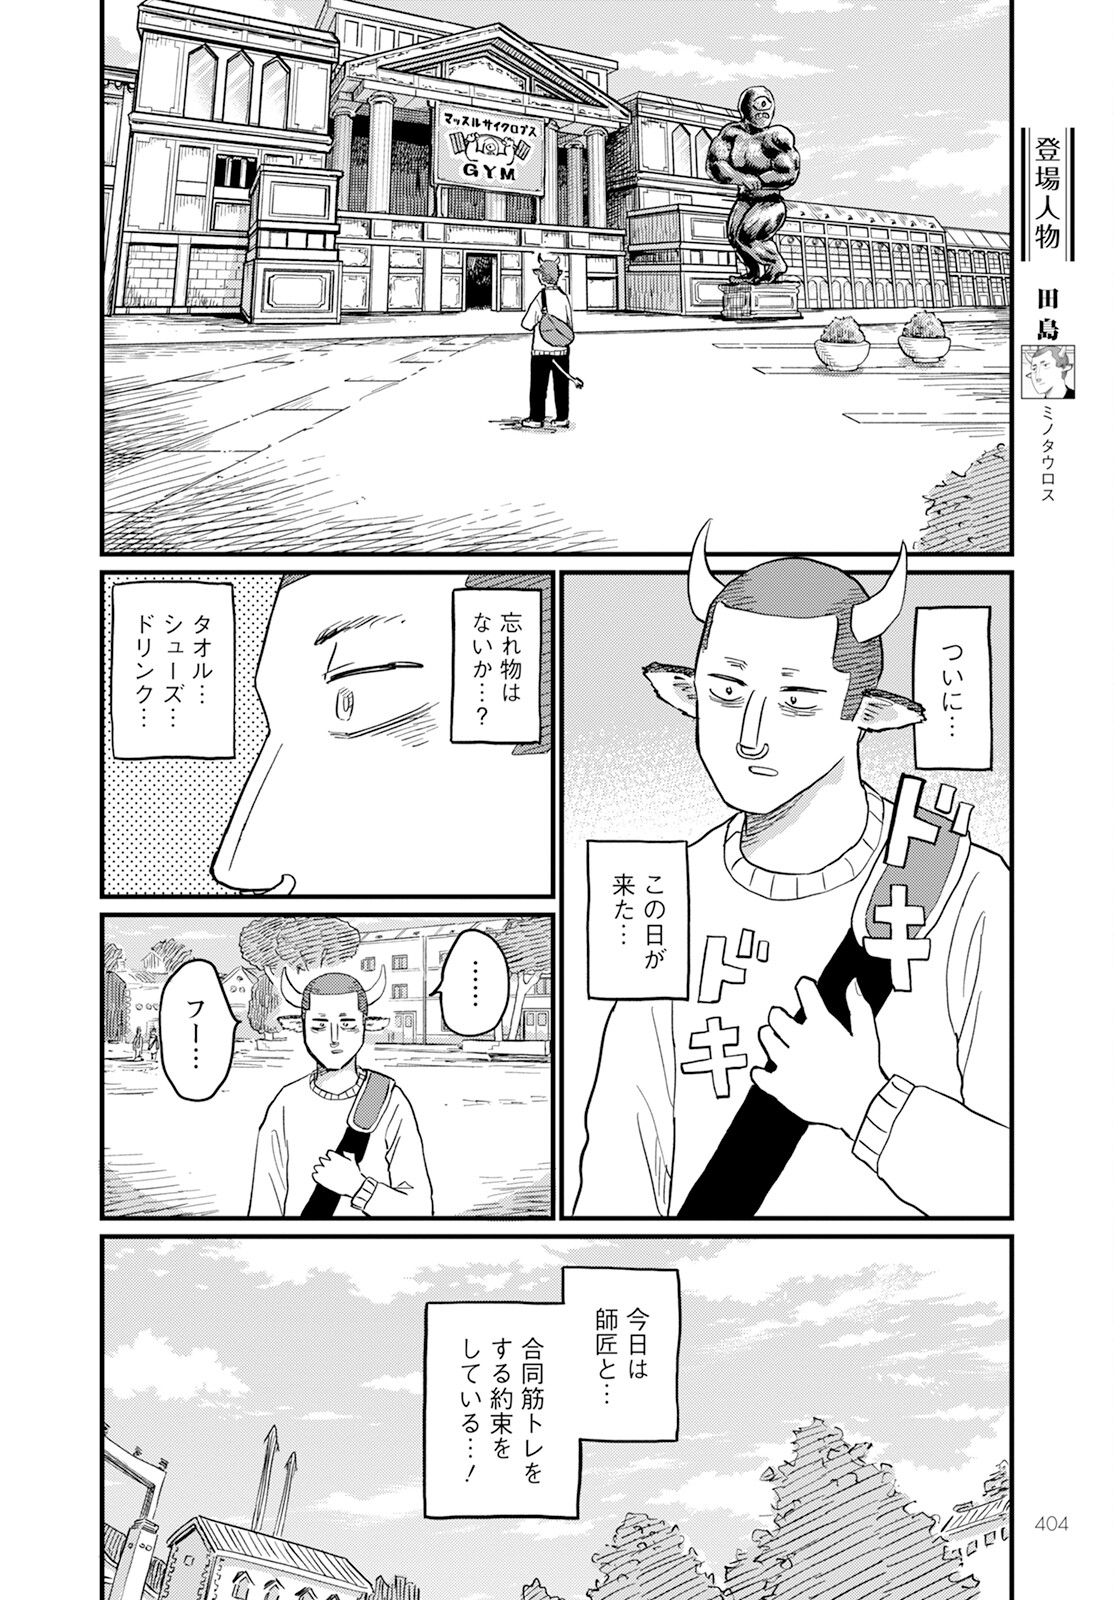 Tsuki Izuru Machi no Hitobito - Chapter 19 - Page 2